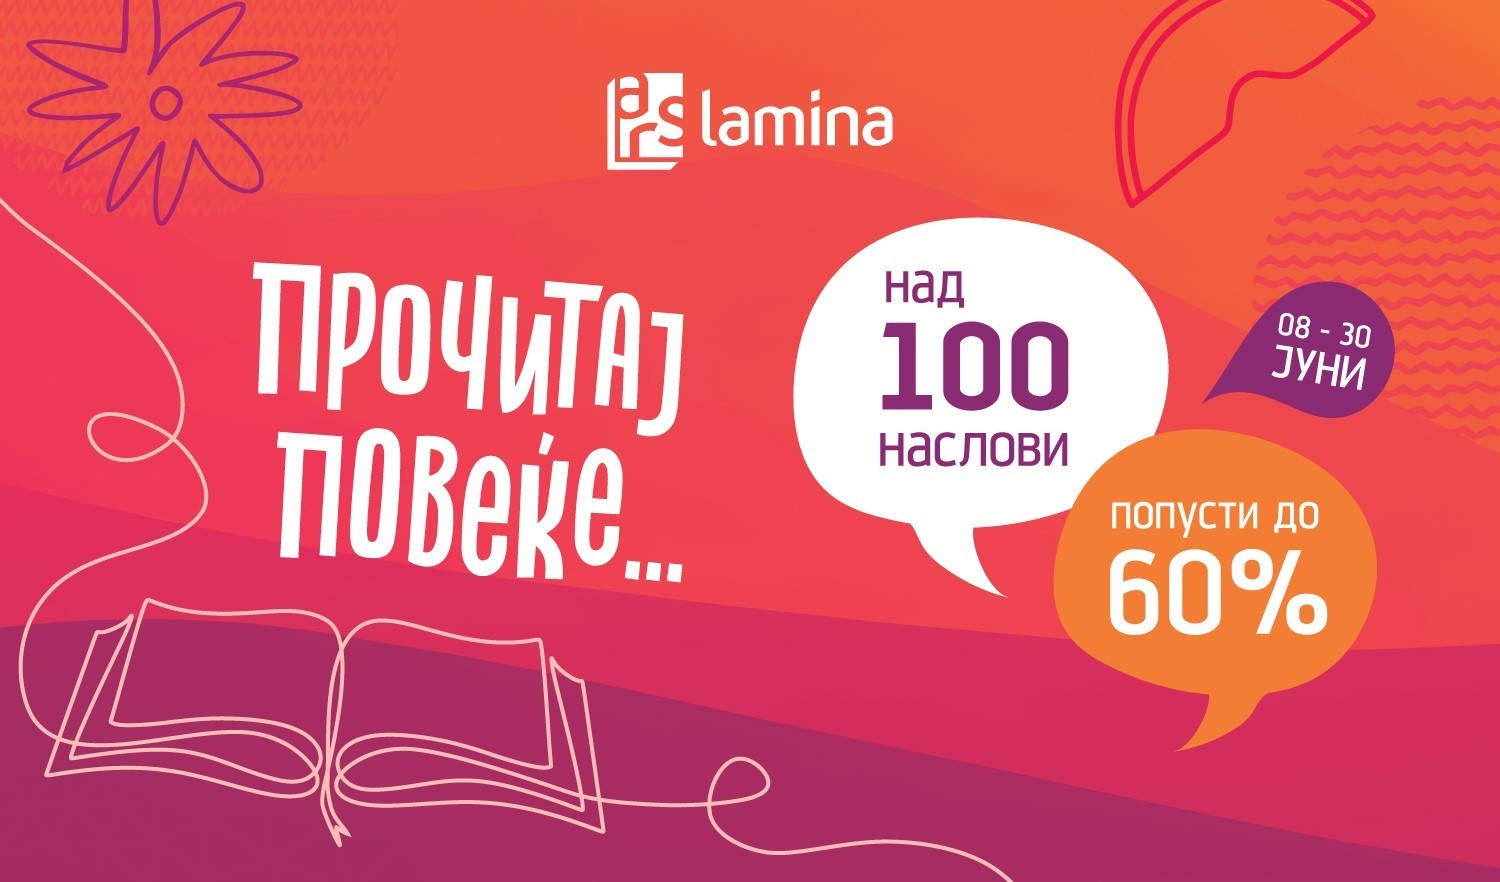 „Прочитај повеќе“ – нова кампања на „Арс Ламина“ со попусти до 60 отсто